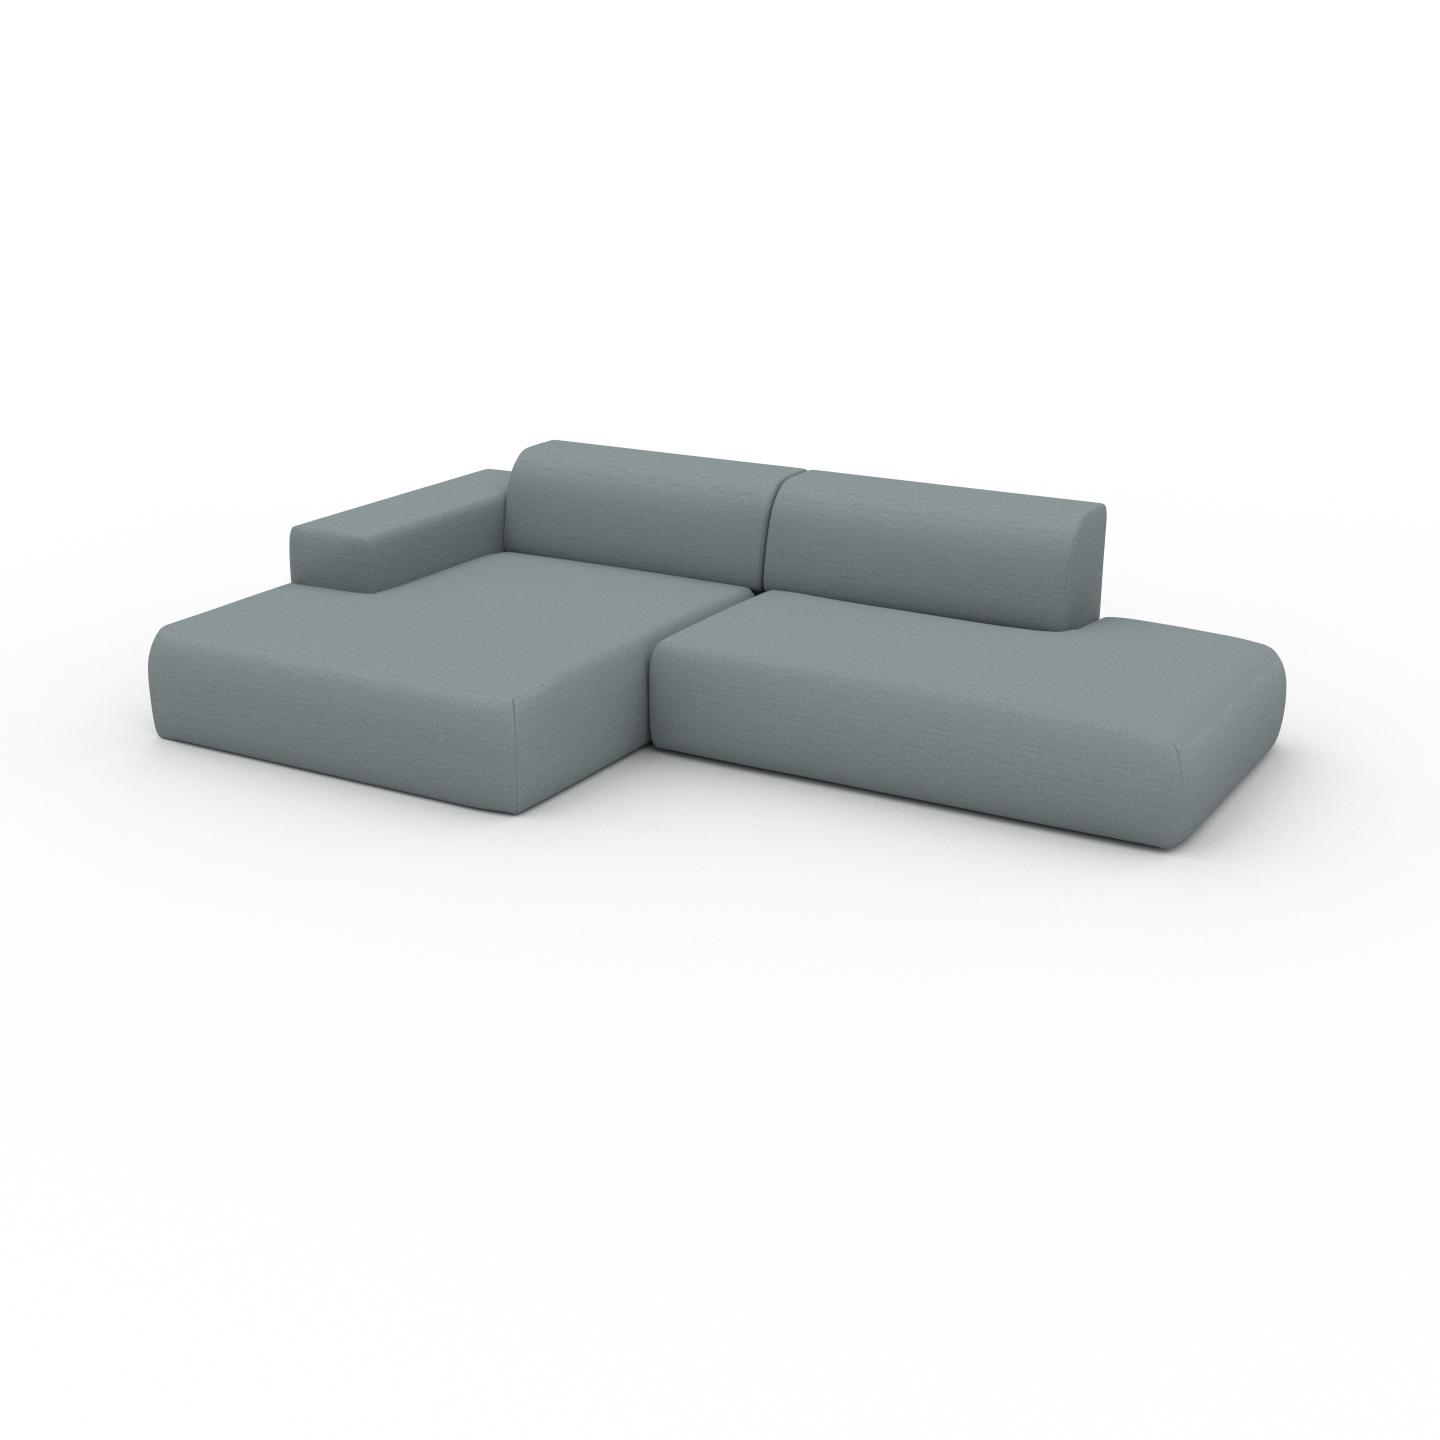 MYCS Ecksofa Taubenblau - Flexible Designer-Polsterecke, L-Form: Beste Qualität, einzigartiges Design - 296 x 72 x 168 cm, konfigurierbar